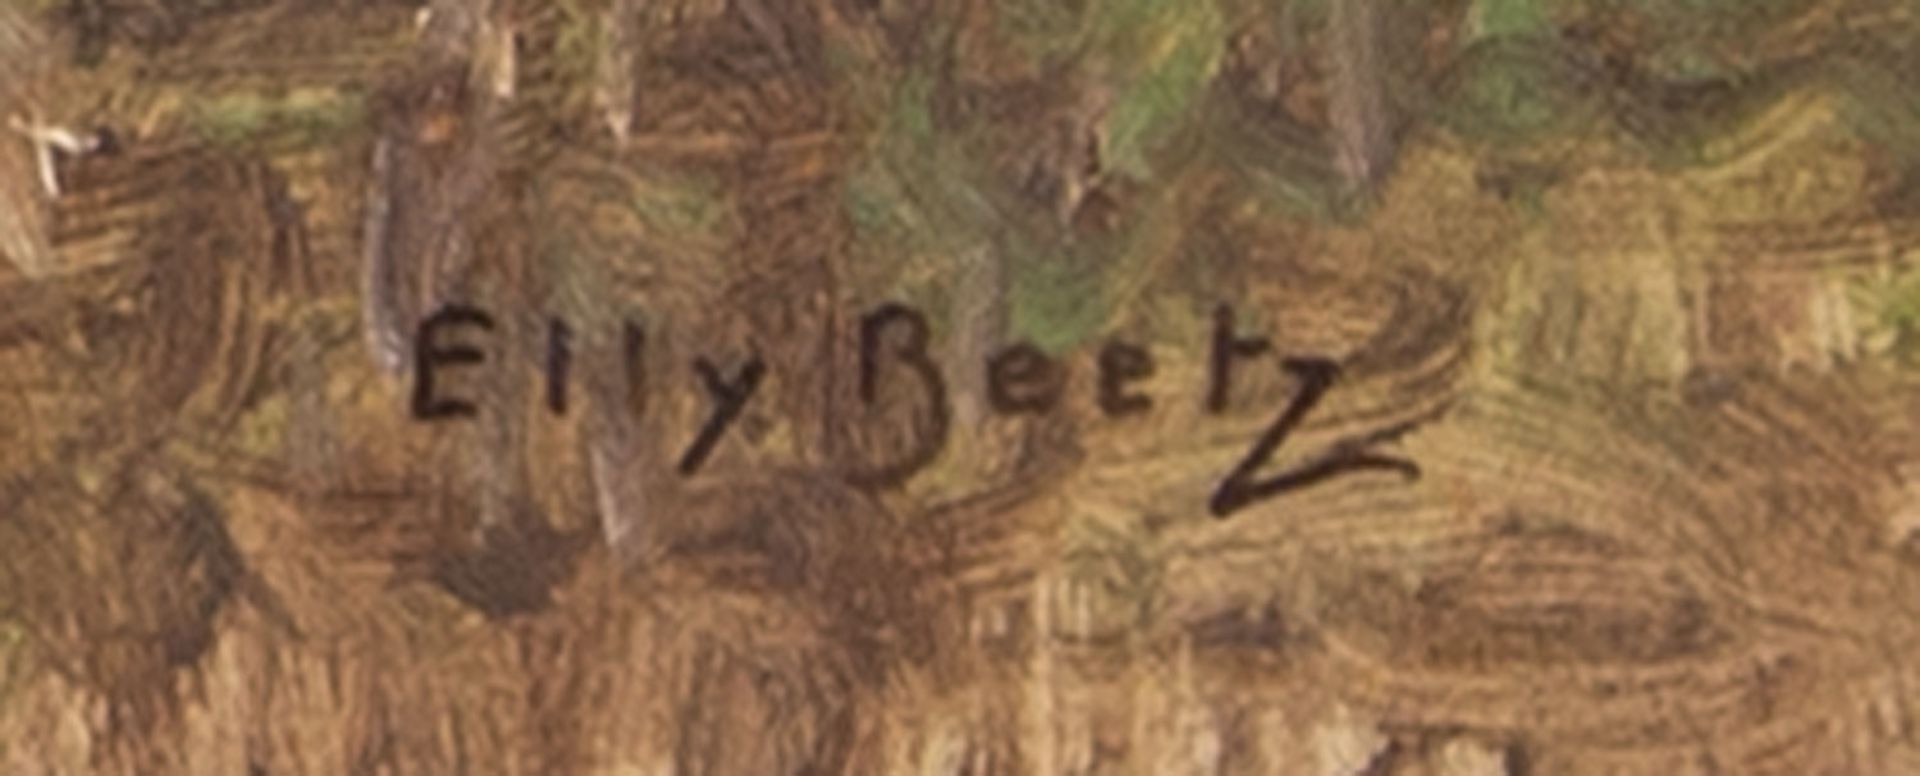 Elly Beetz - Bild 2 aus 3